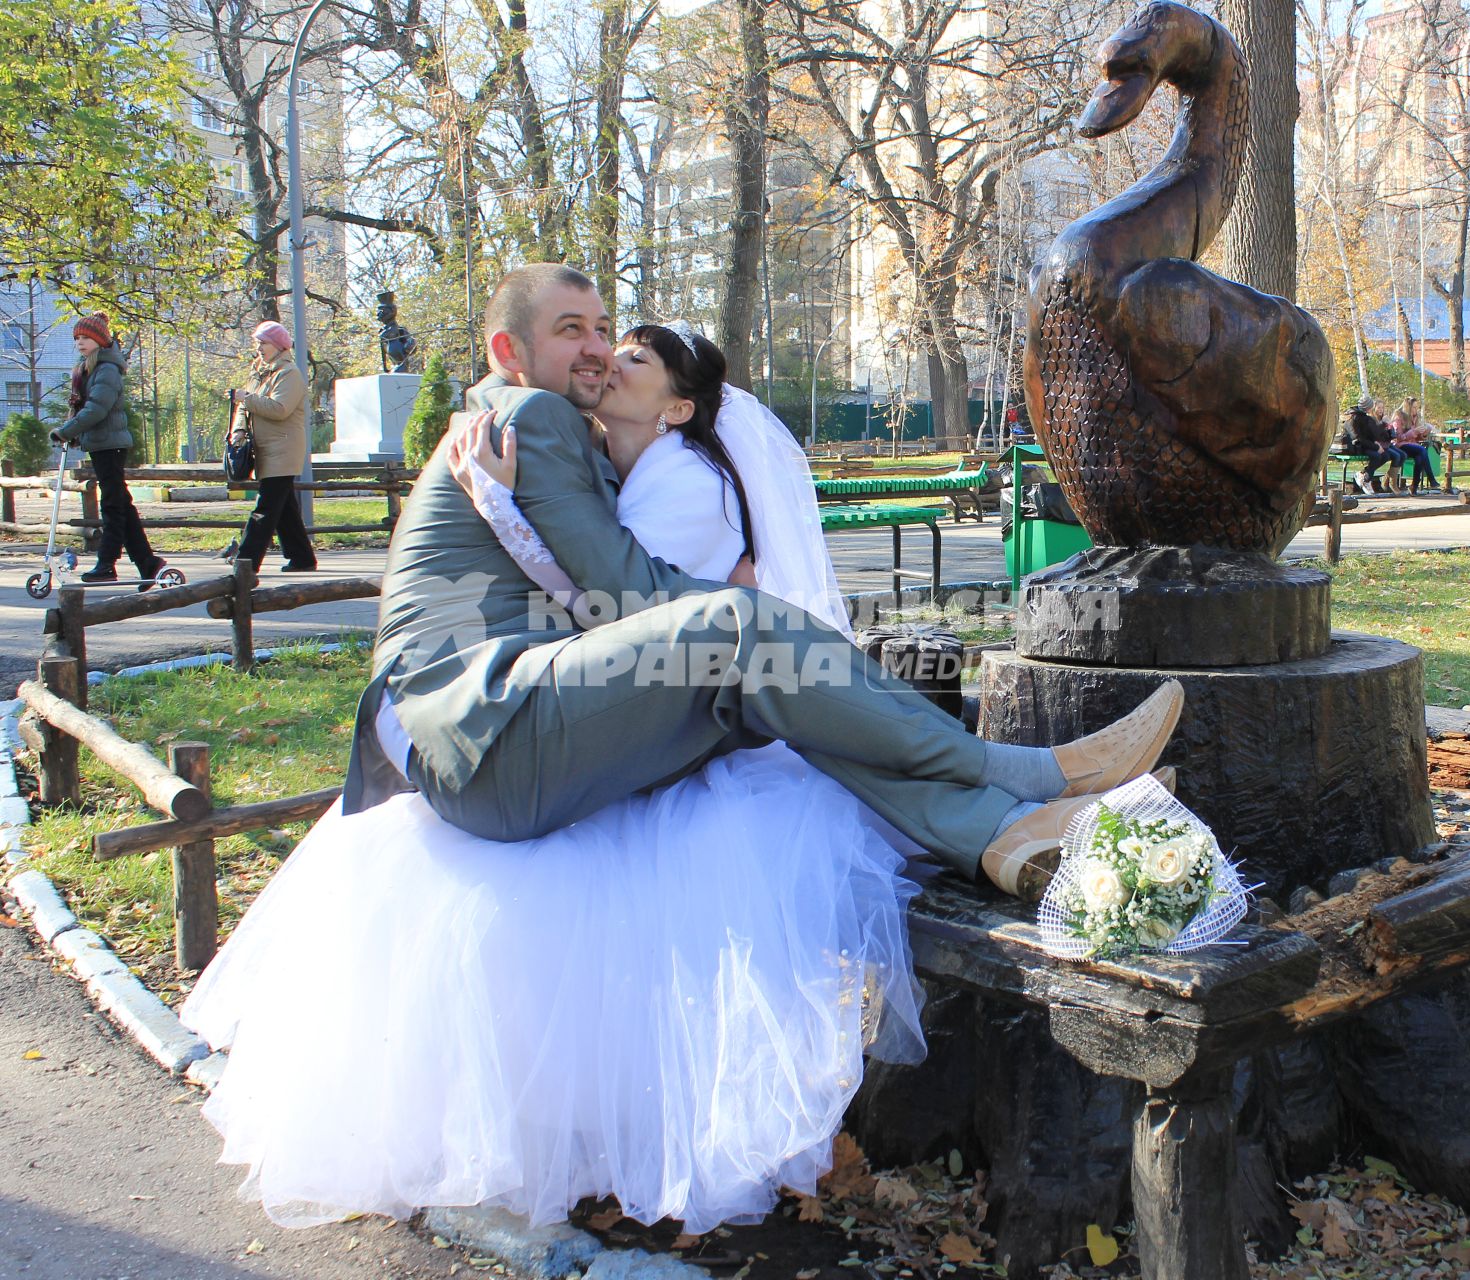 Андрей Михасенко со своей возлюбленной Аленой расписались на Всемирный день мужчин. Жена носит мужа на руках, а не он ее.